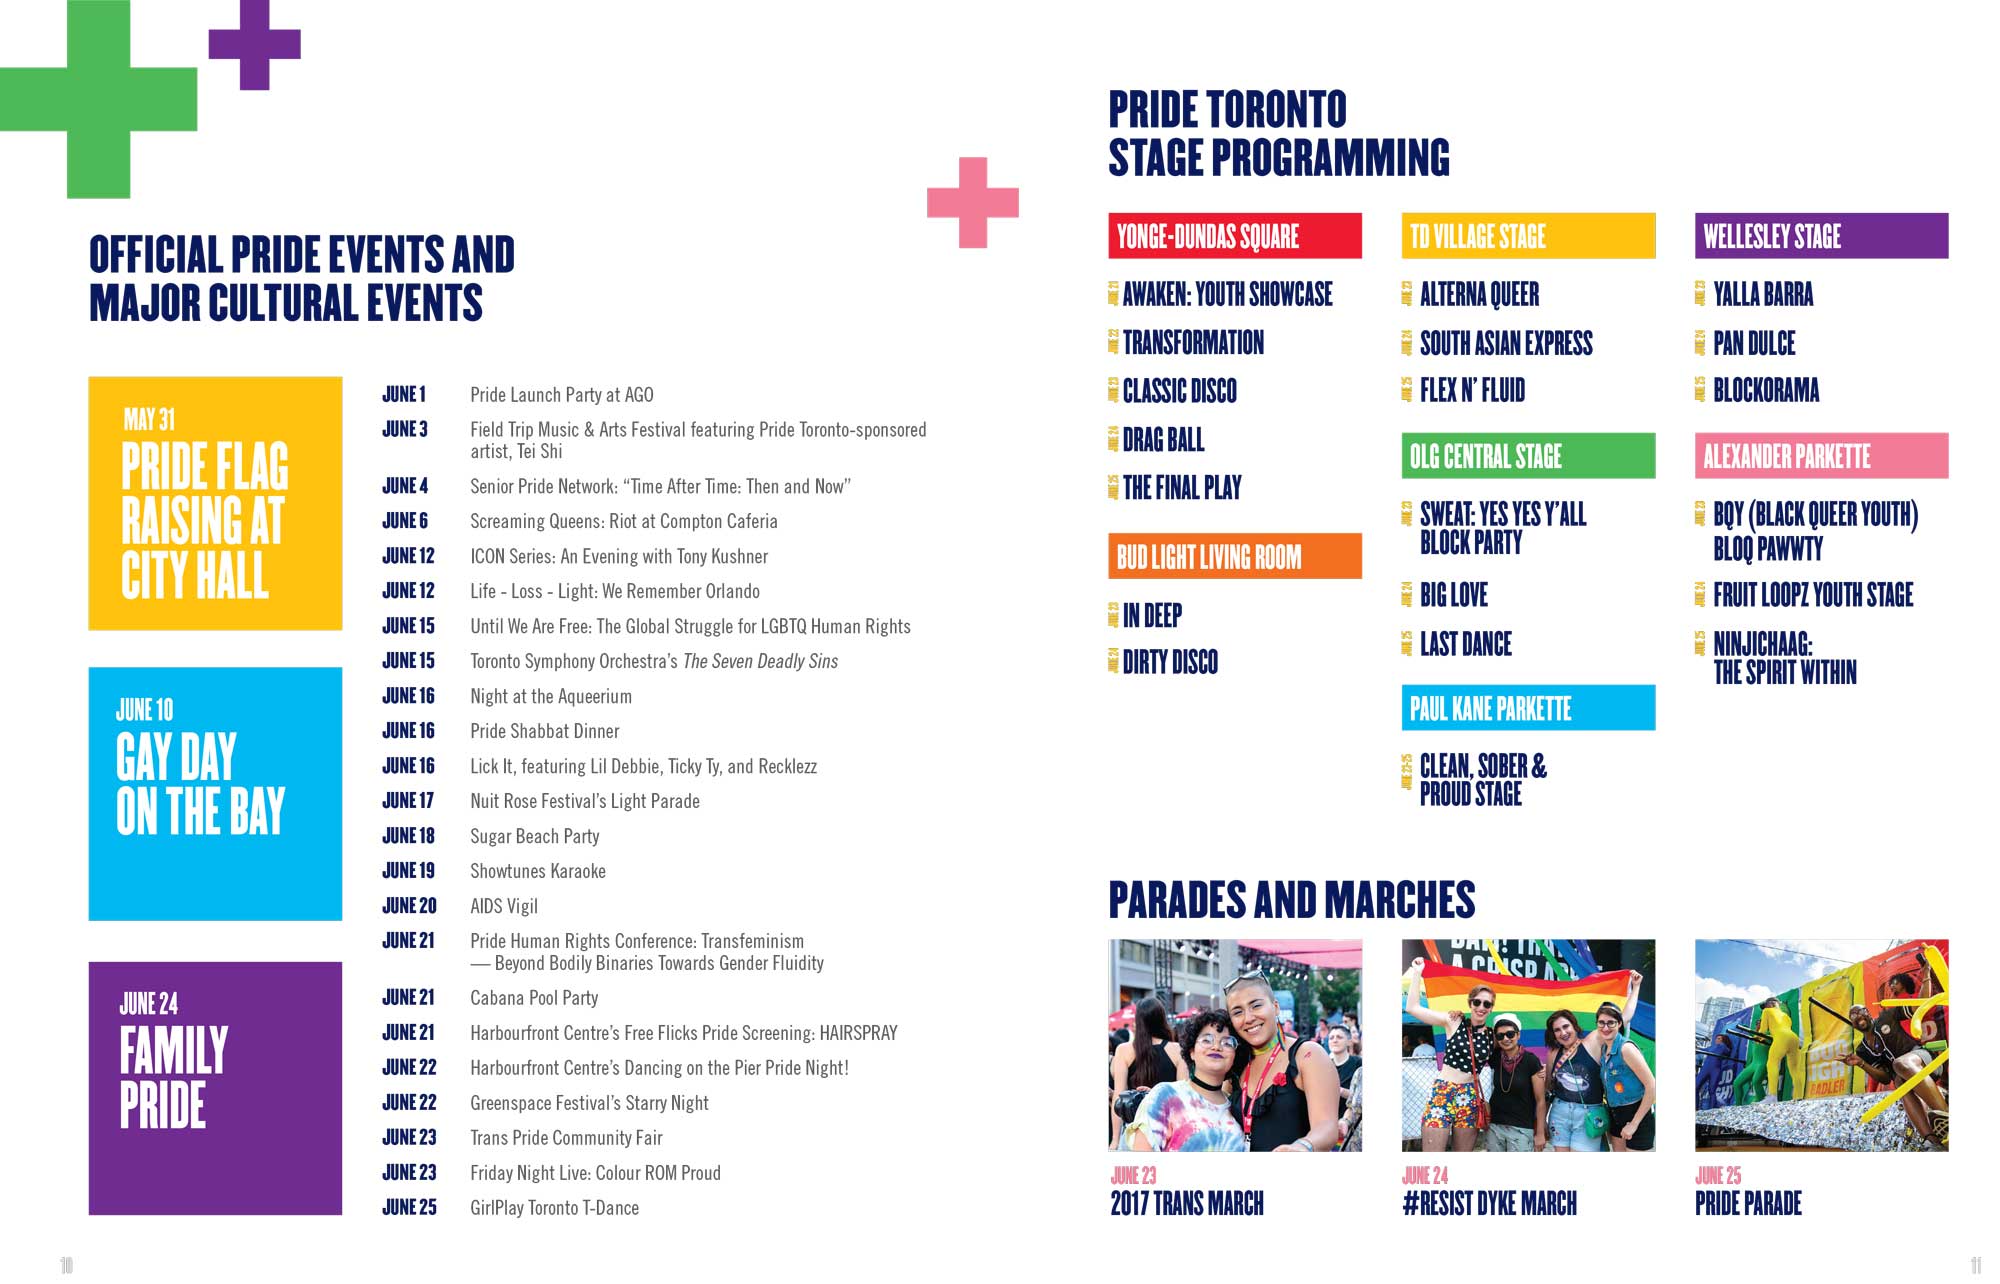 Pride Toronto 2017 Annual Report